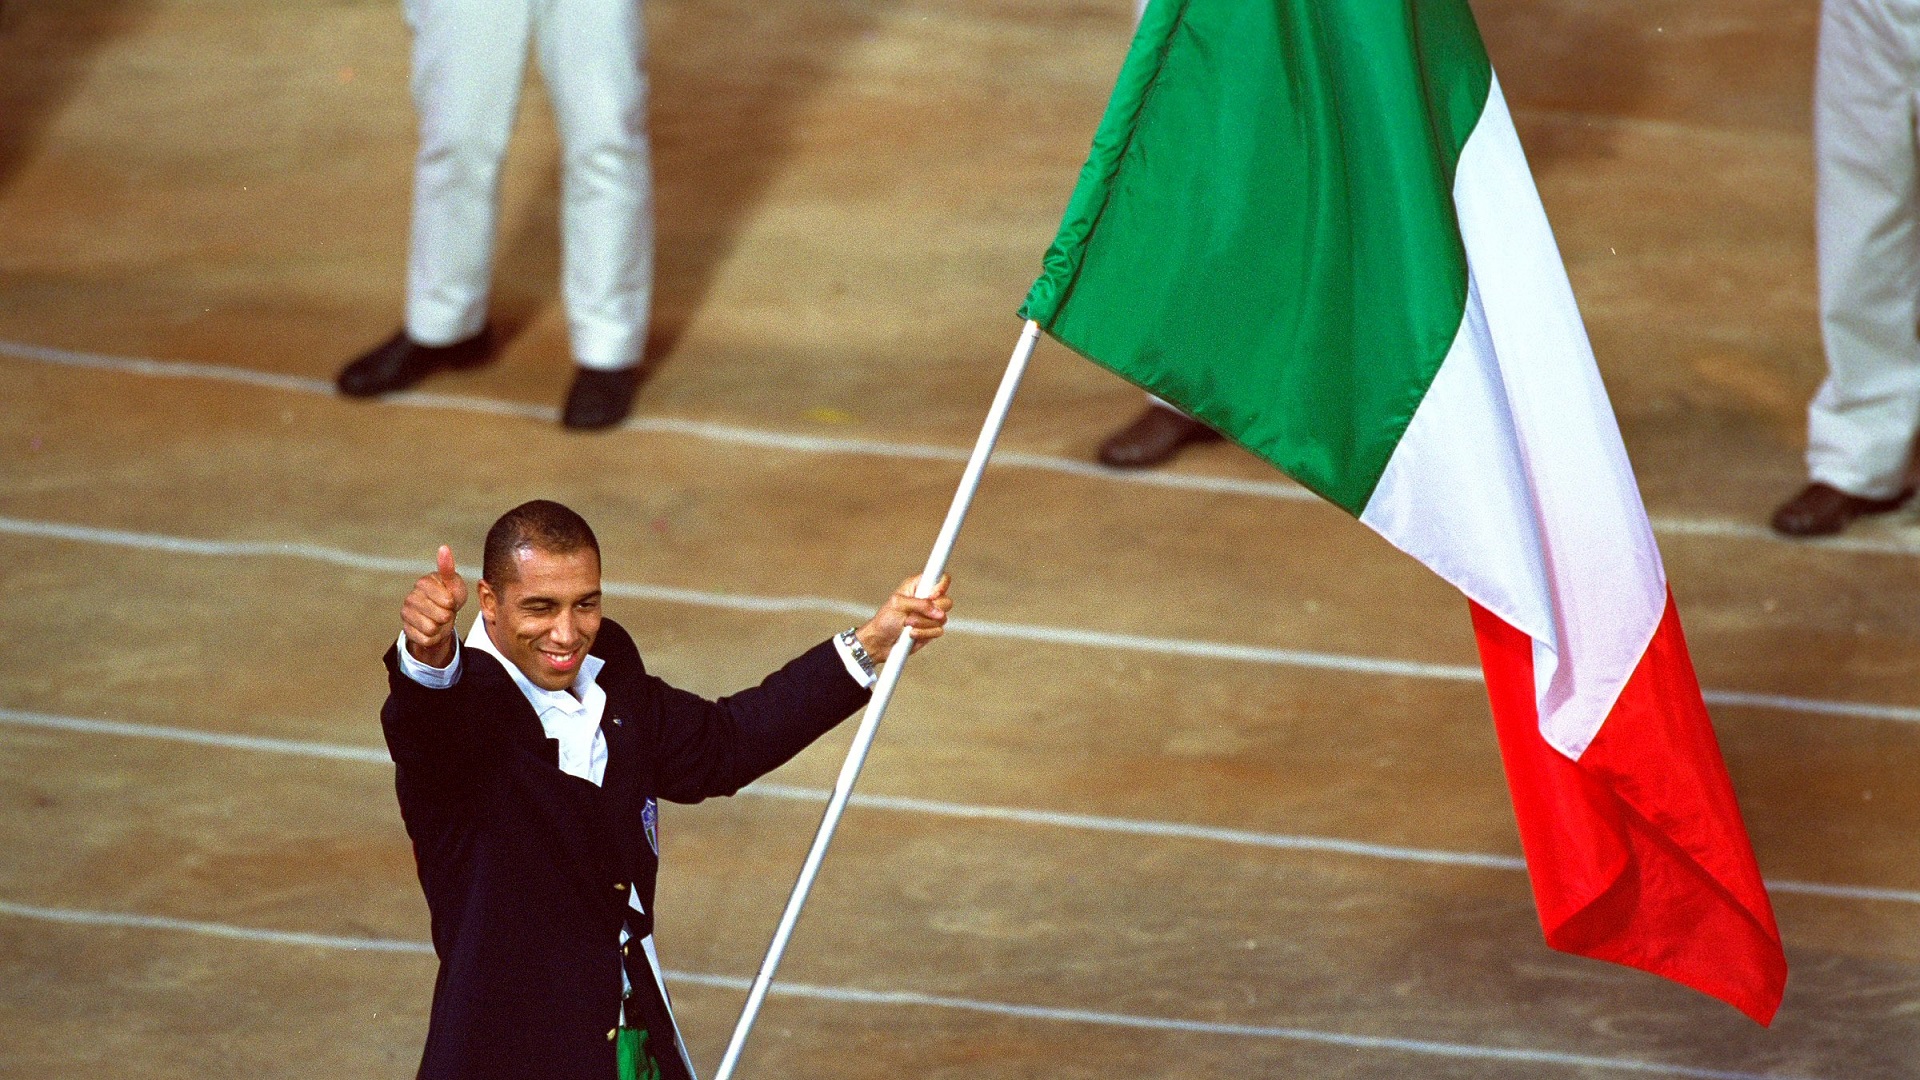 Portabandiera olimpiadi: tradizione italiana